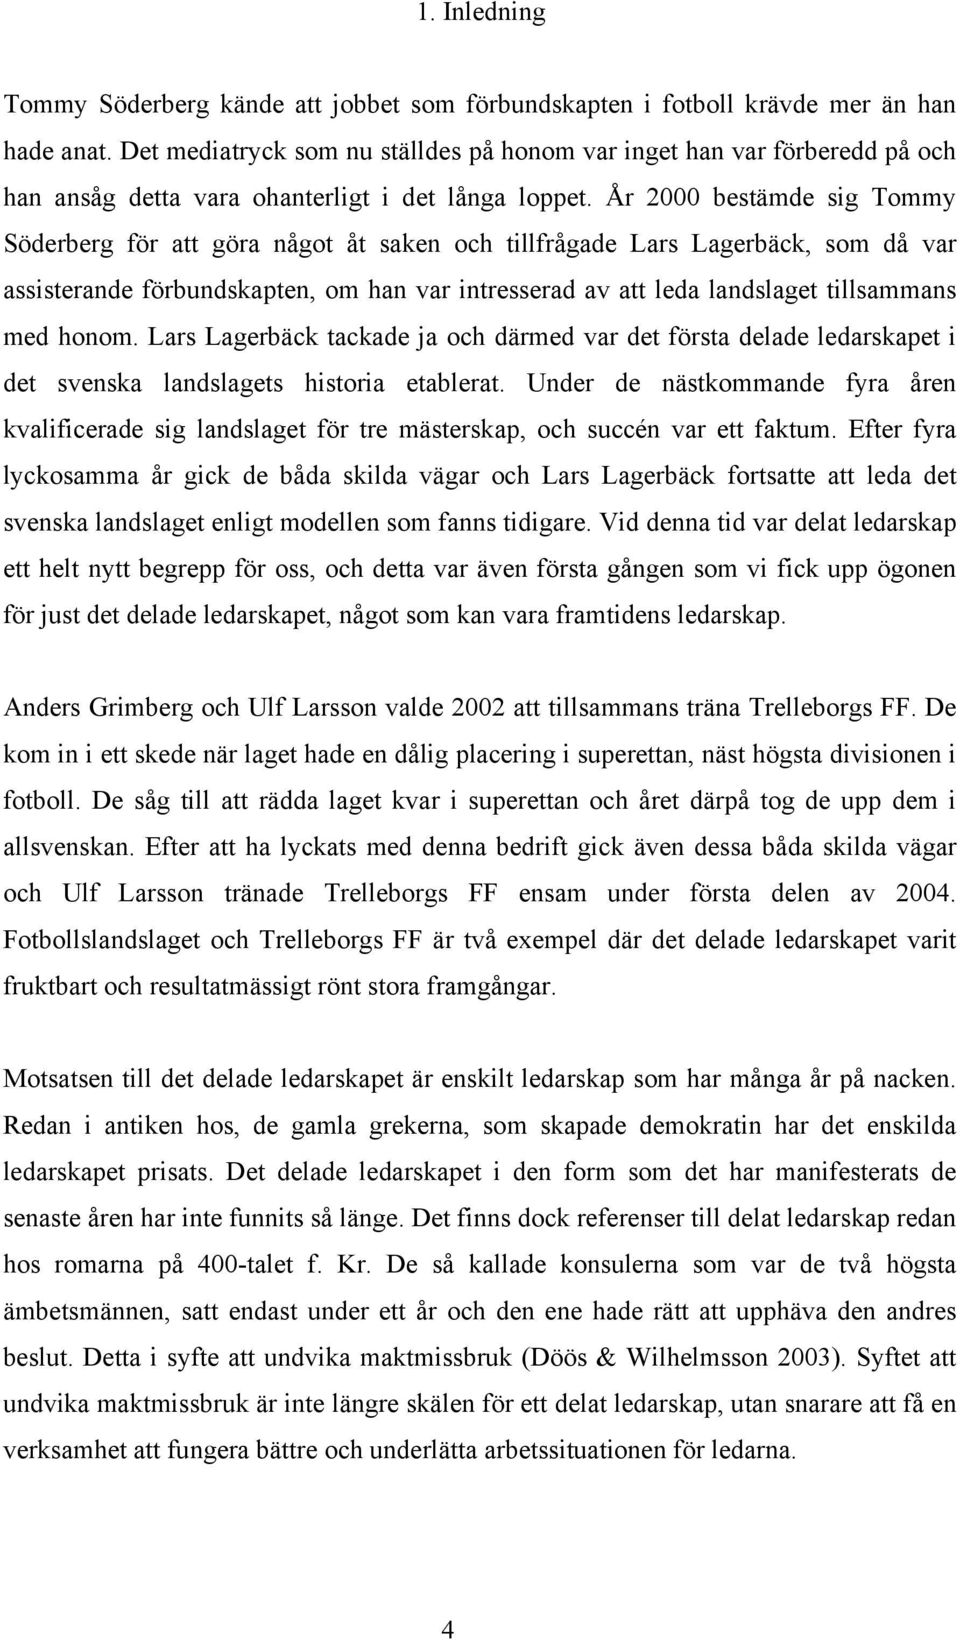 År 2000 bestämde sig Tommy Söderberg för att göra något åt saken och tillfrågade Lars Lagerbäck, som då var assisterande förbundskapten, om han var intresserad av att leda landslaget tillsammans med